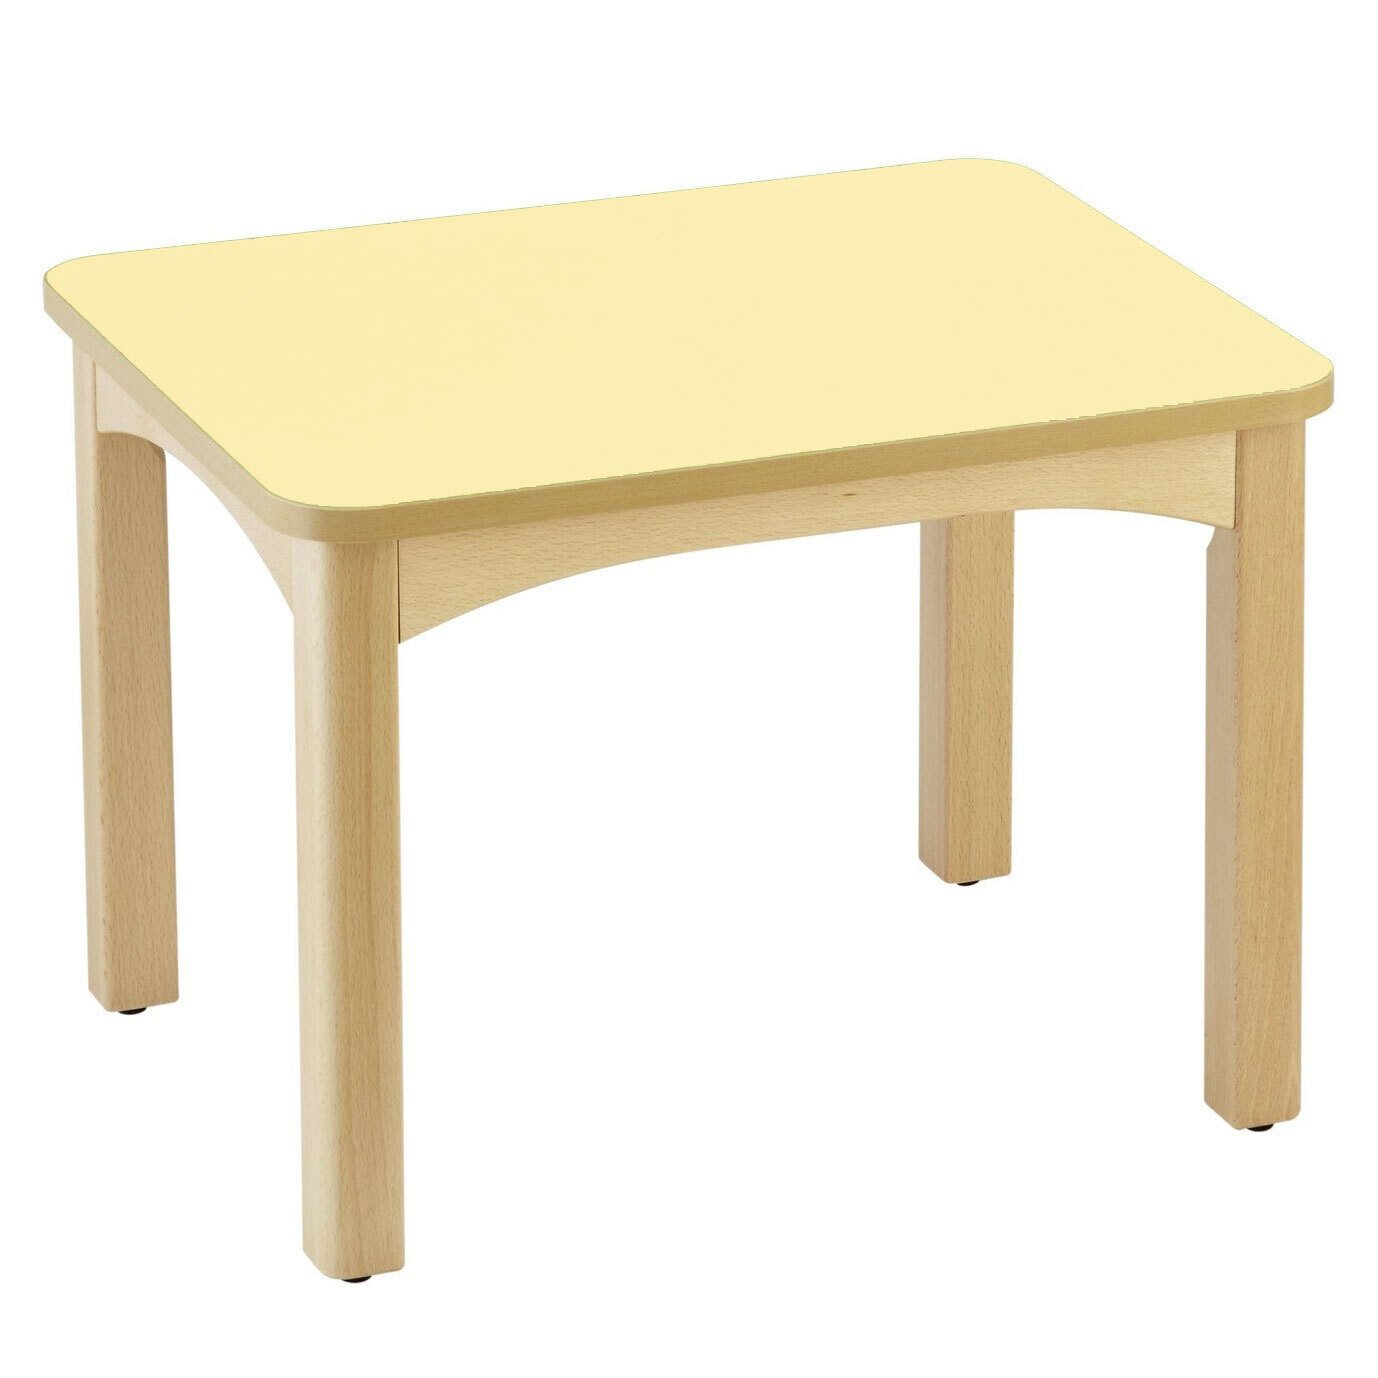 Table en bois pour crèche 60 x 50 cm t1 citron